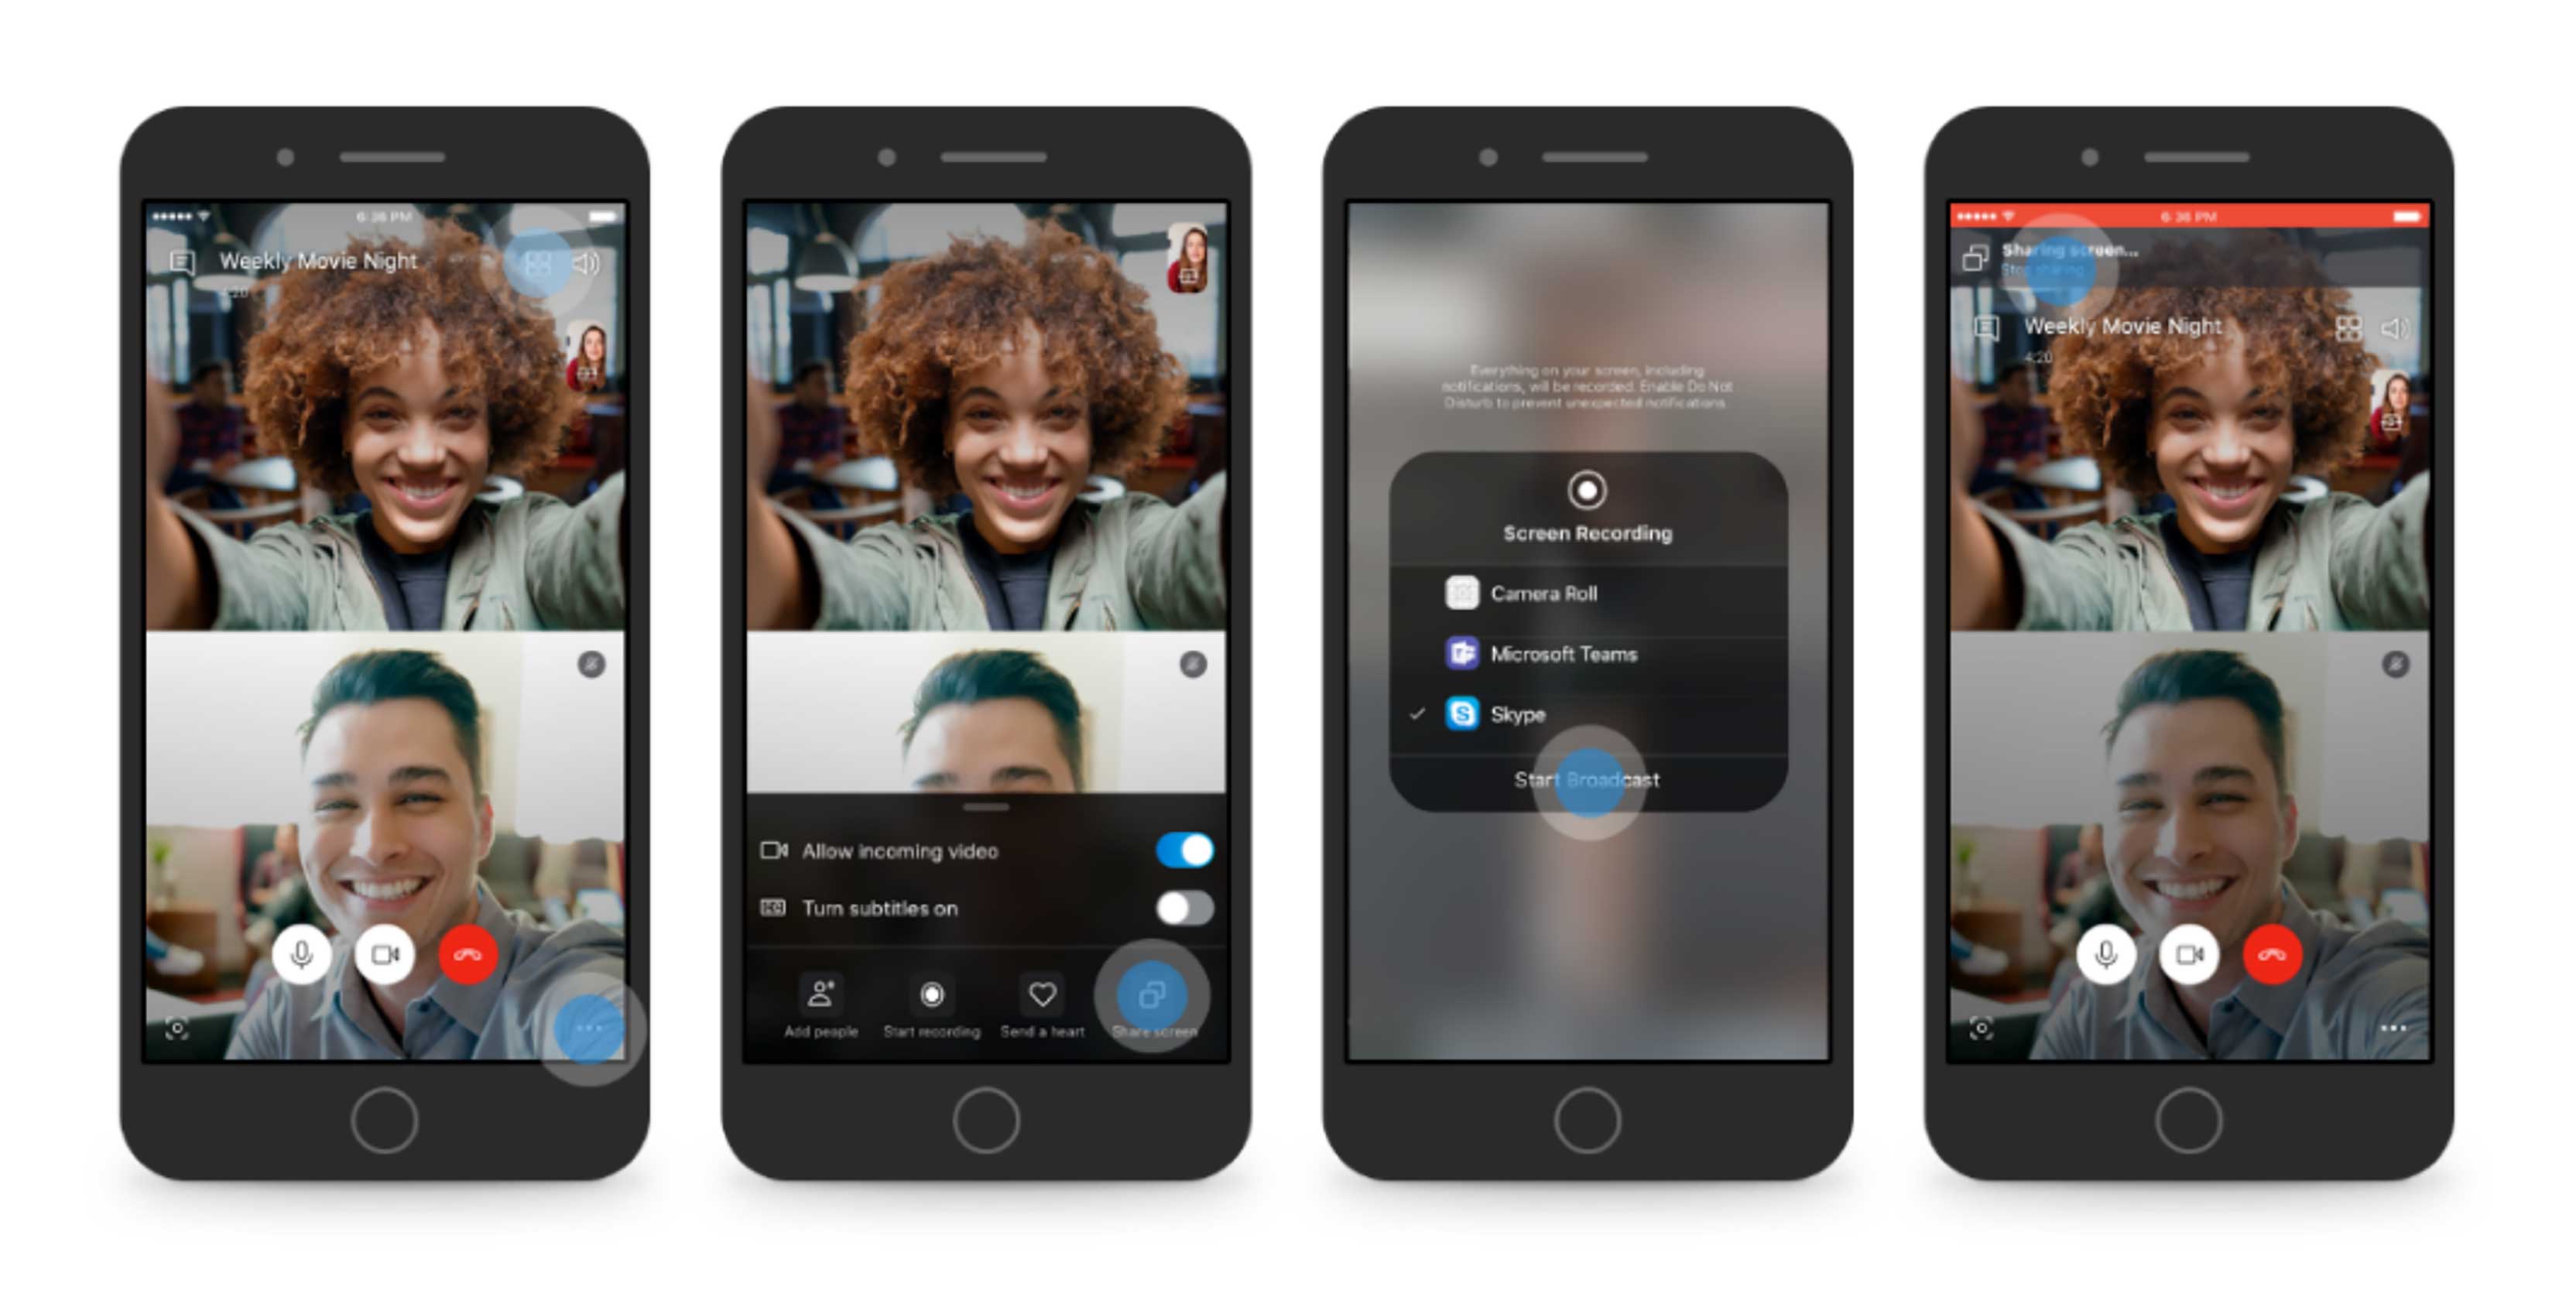 Skype screen sharing on mobile